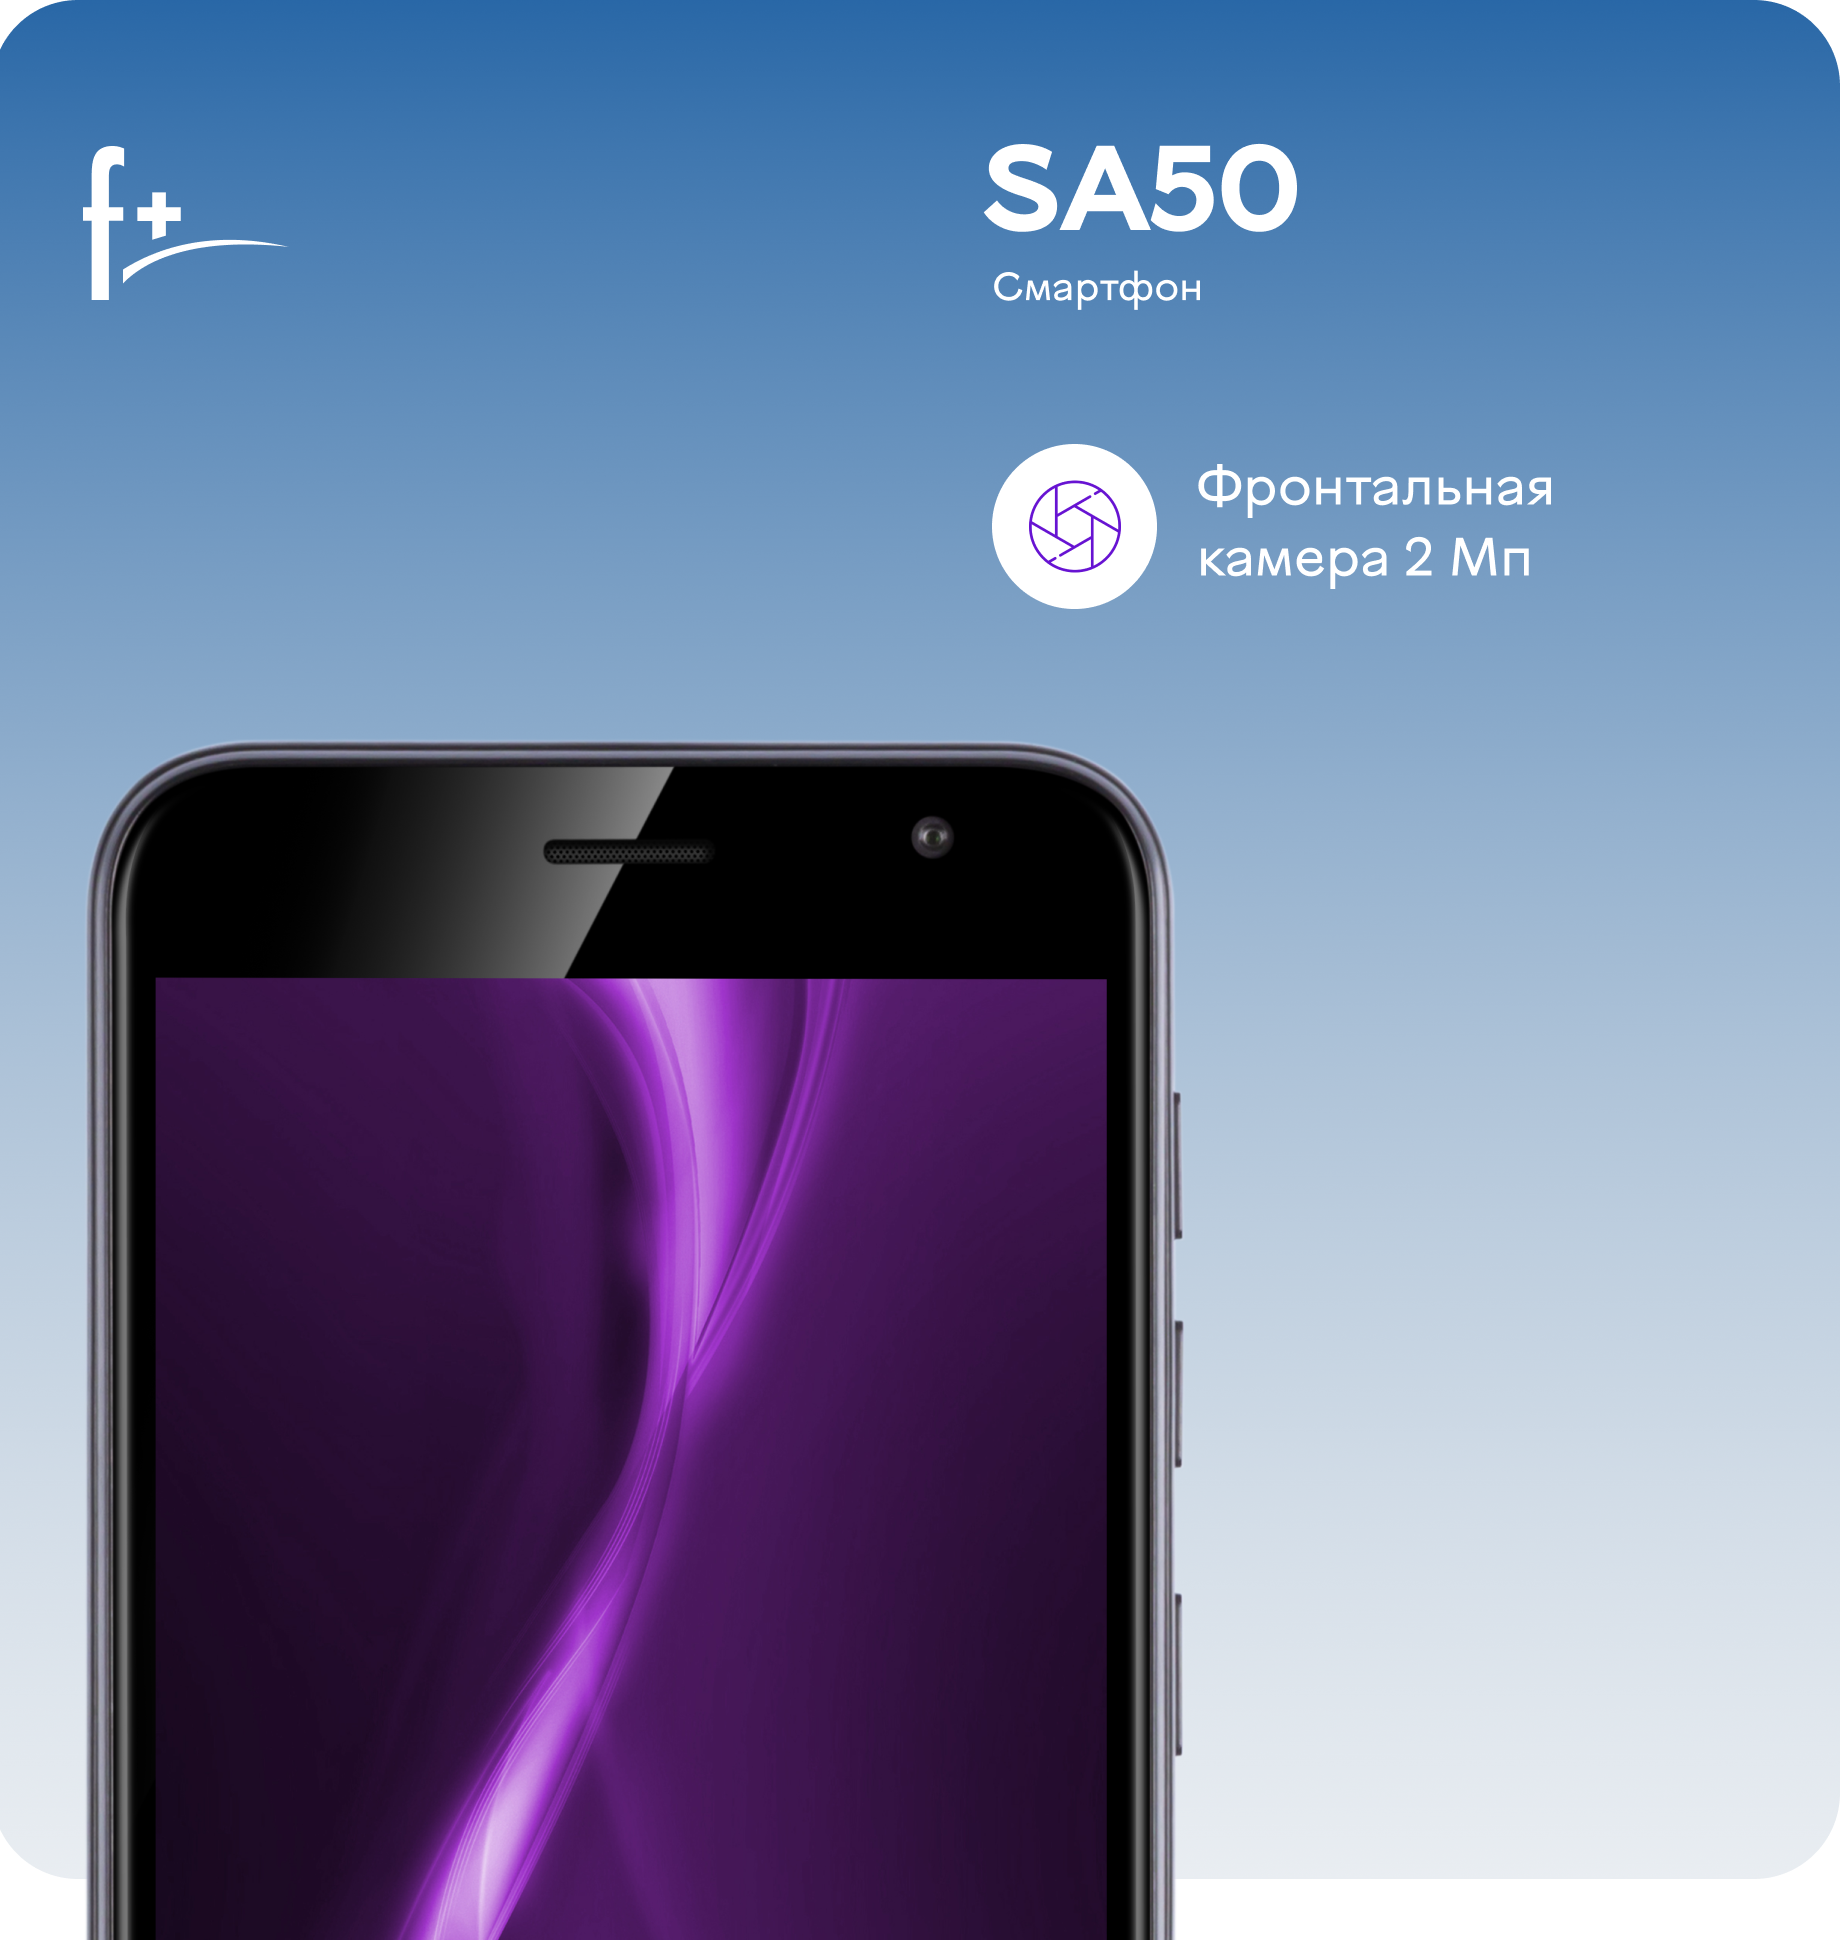 Смартфон F+ SA50